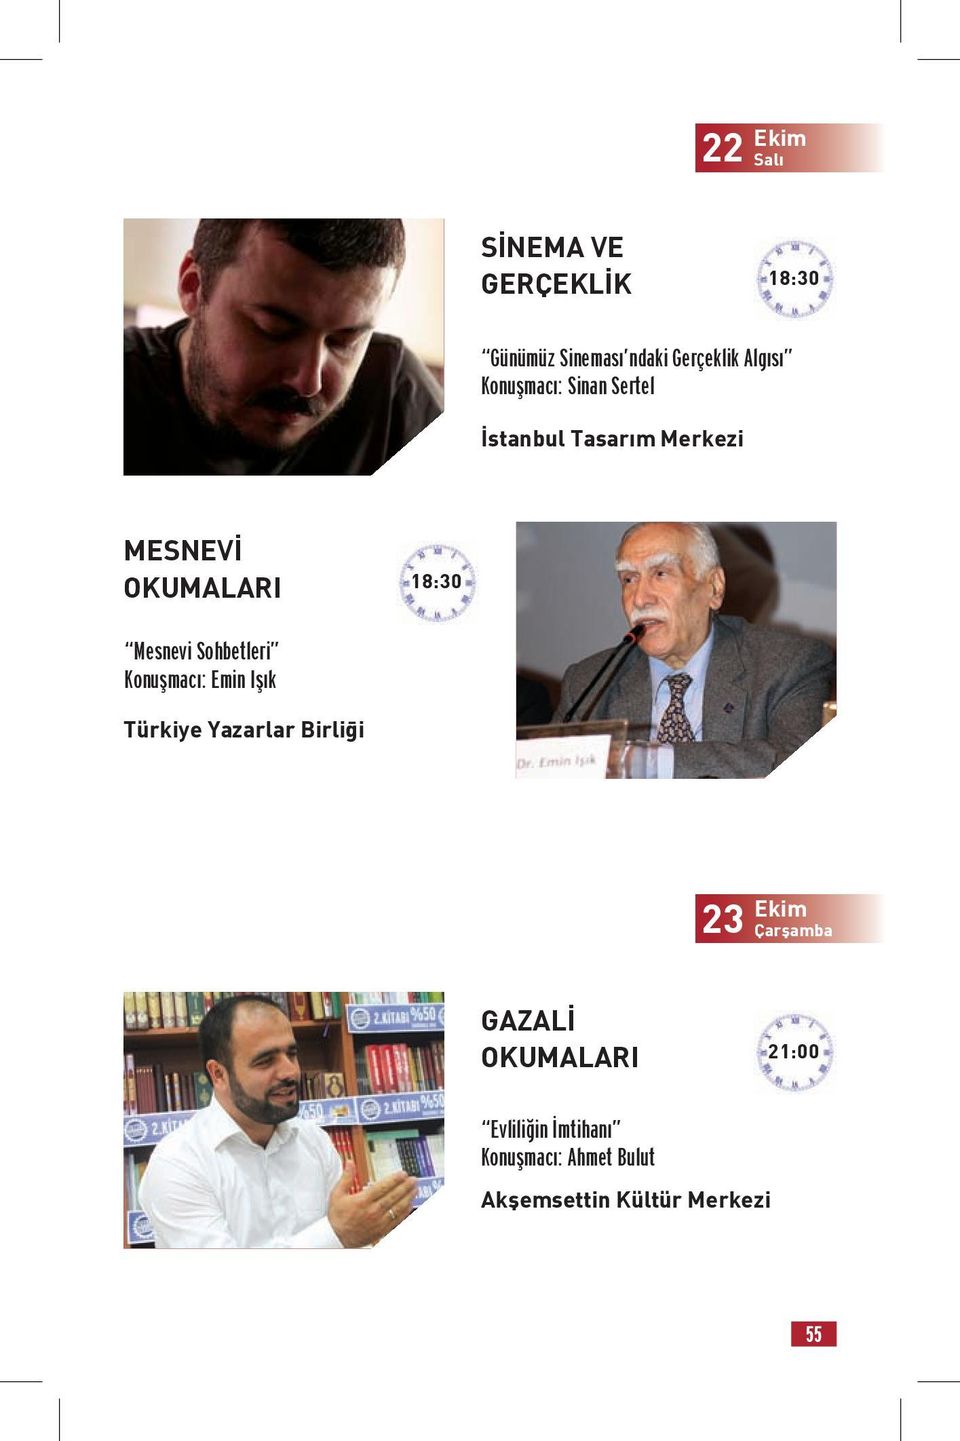 Sohbetleri Konuşmacı: Emin Işık Türkiye Yazarlar Birliği 23 Ekim Çarşamba